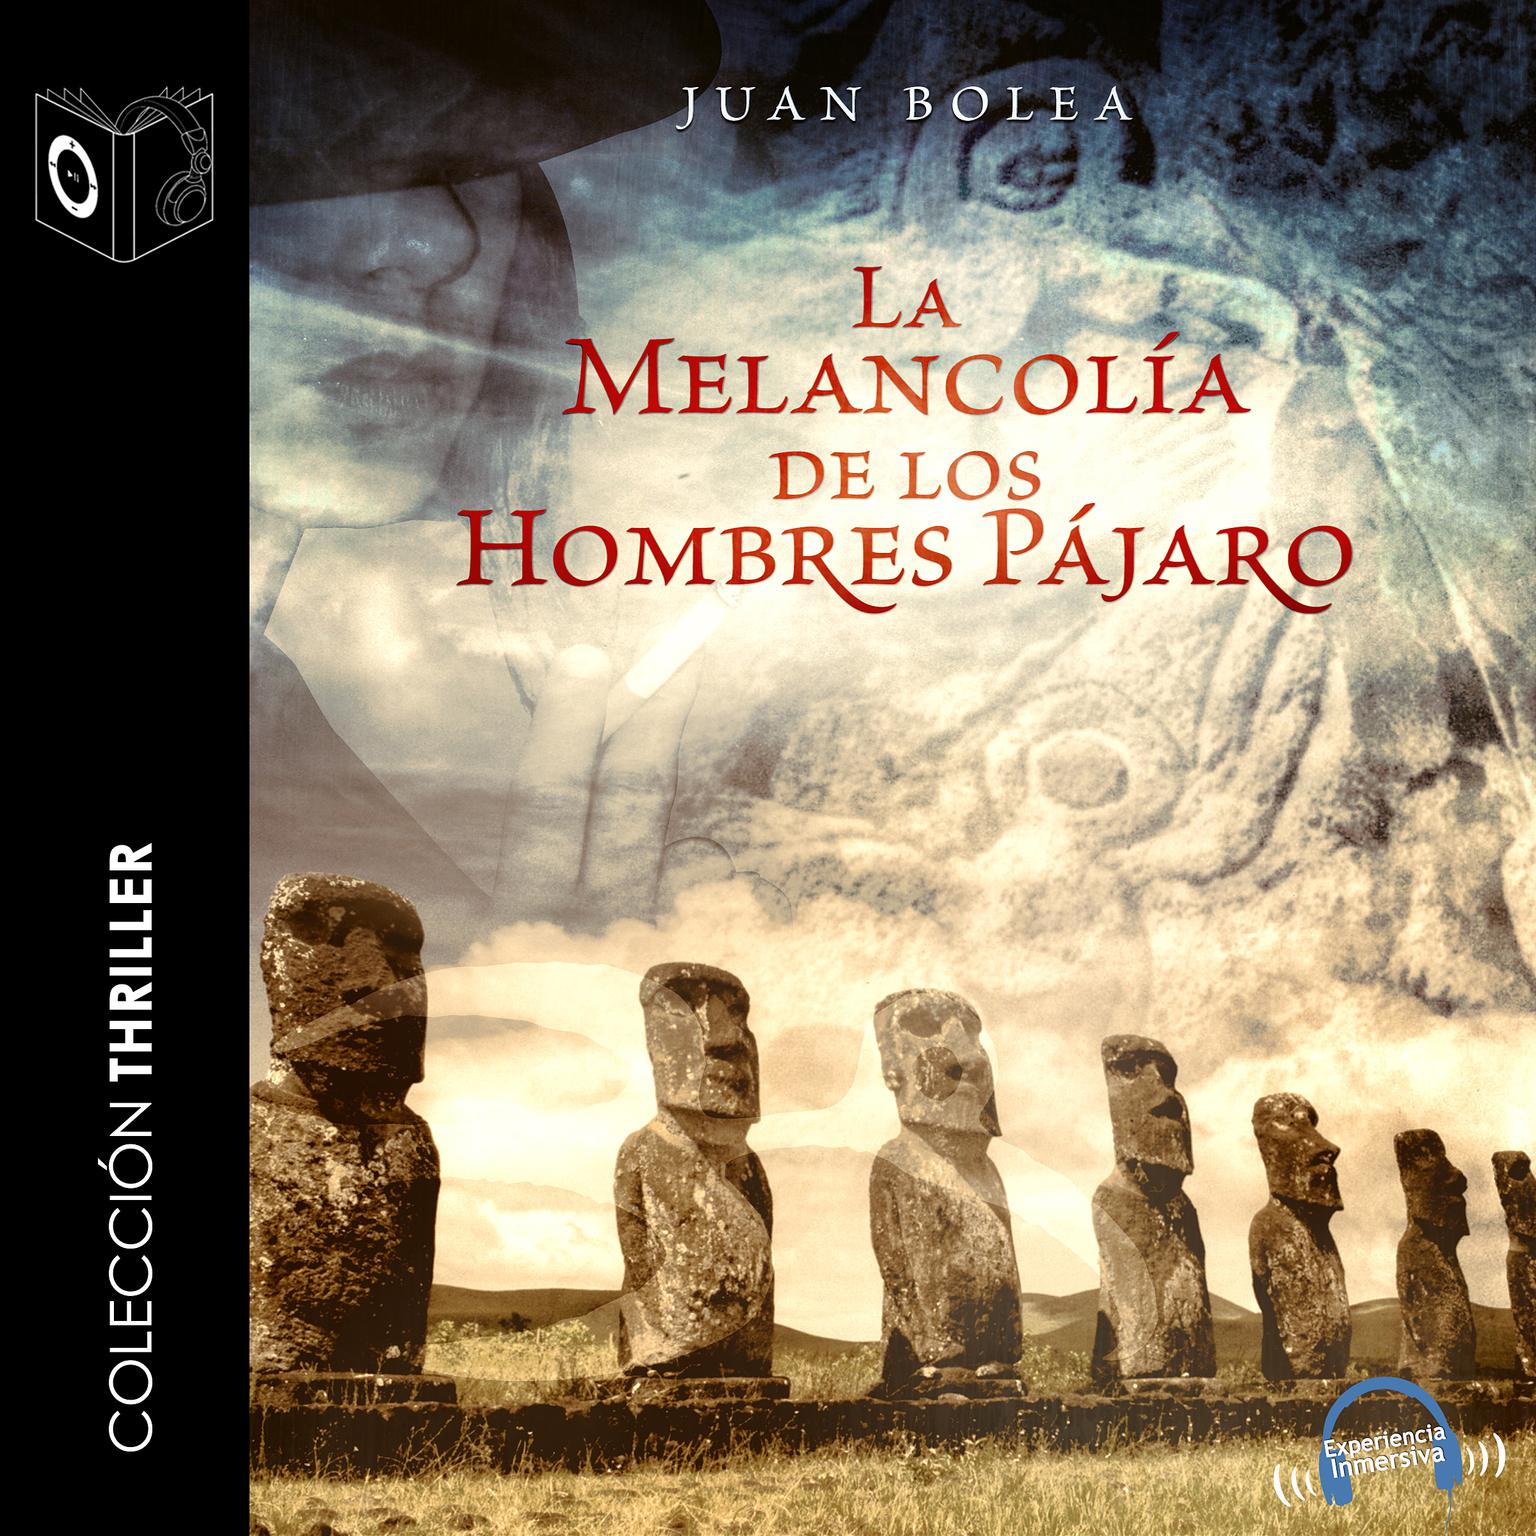 La melancolía de los hombres pájaro Audiobook, by Juan Bolea